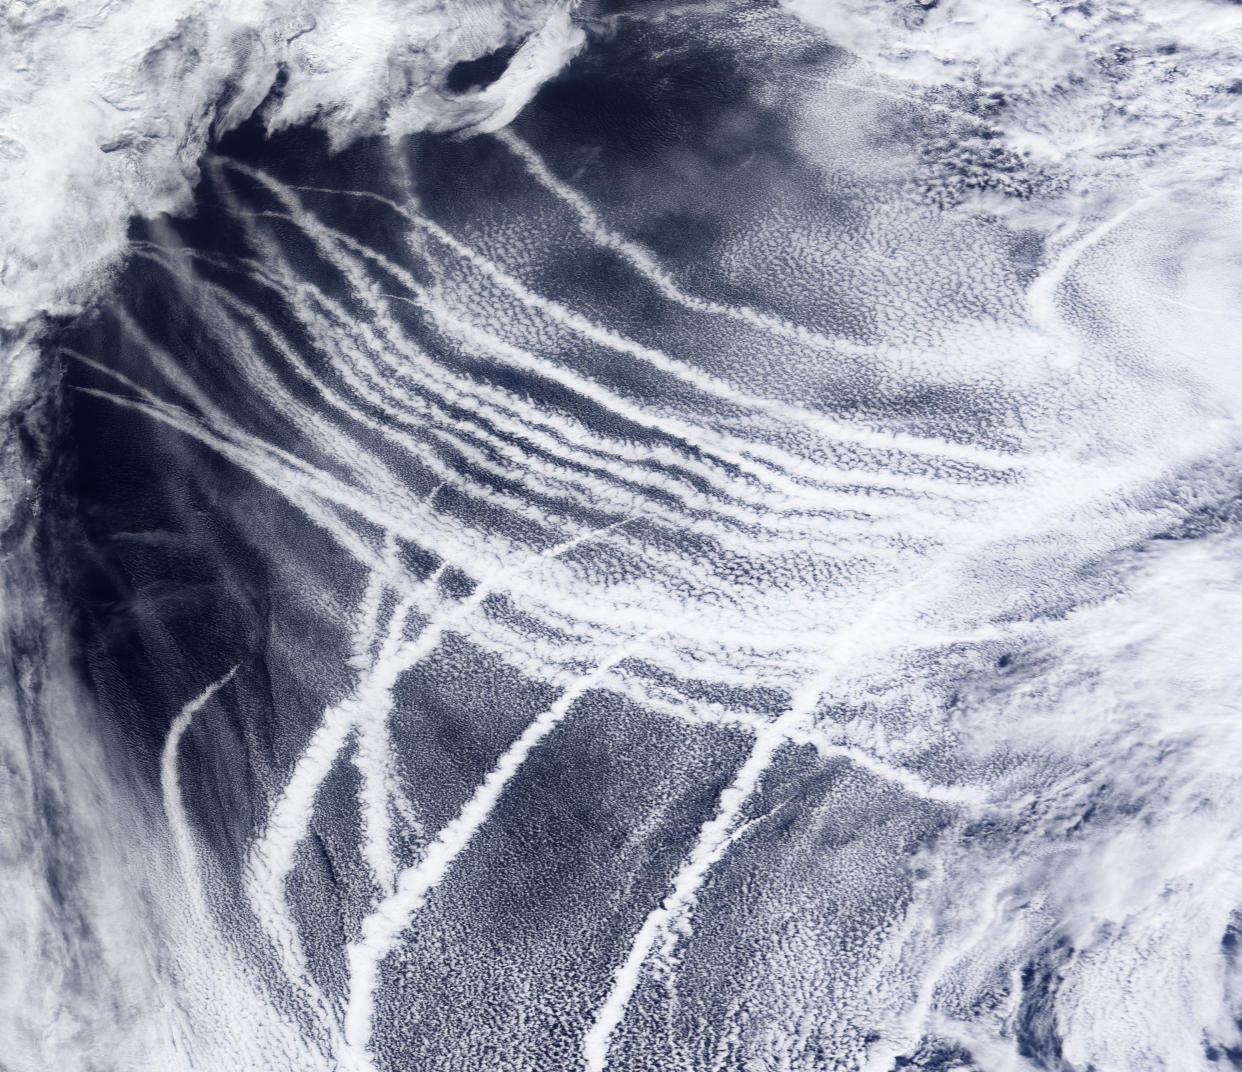 El cielo sobre el noreste del océano Pacífico, lleno de nubes que se forman alrededor de las partículas expulsadas por las embarcaciones, el 4 de marzo de 2009. (Observatorio de la Tierra de la NASA vía The New York Times)